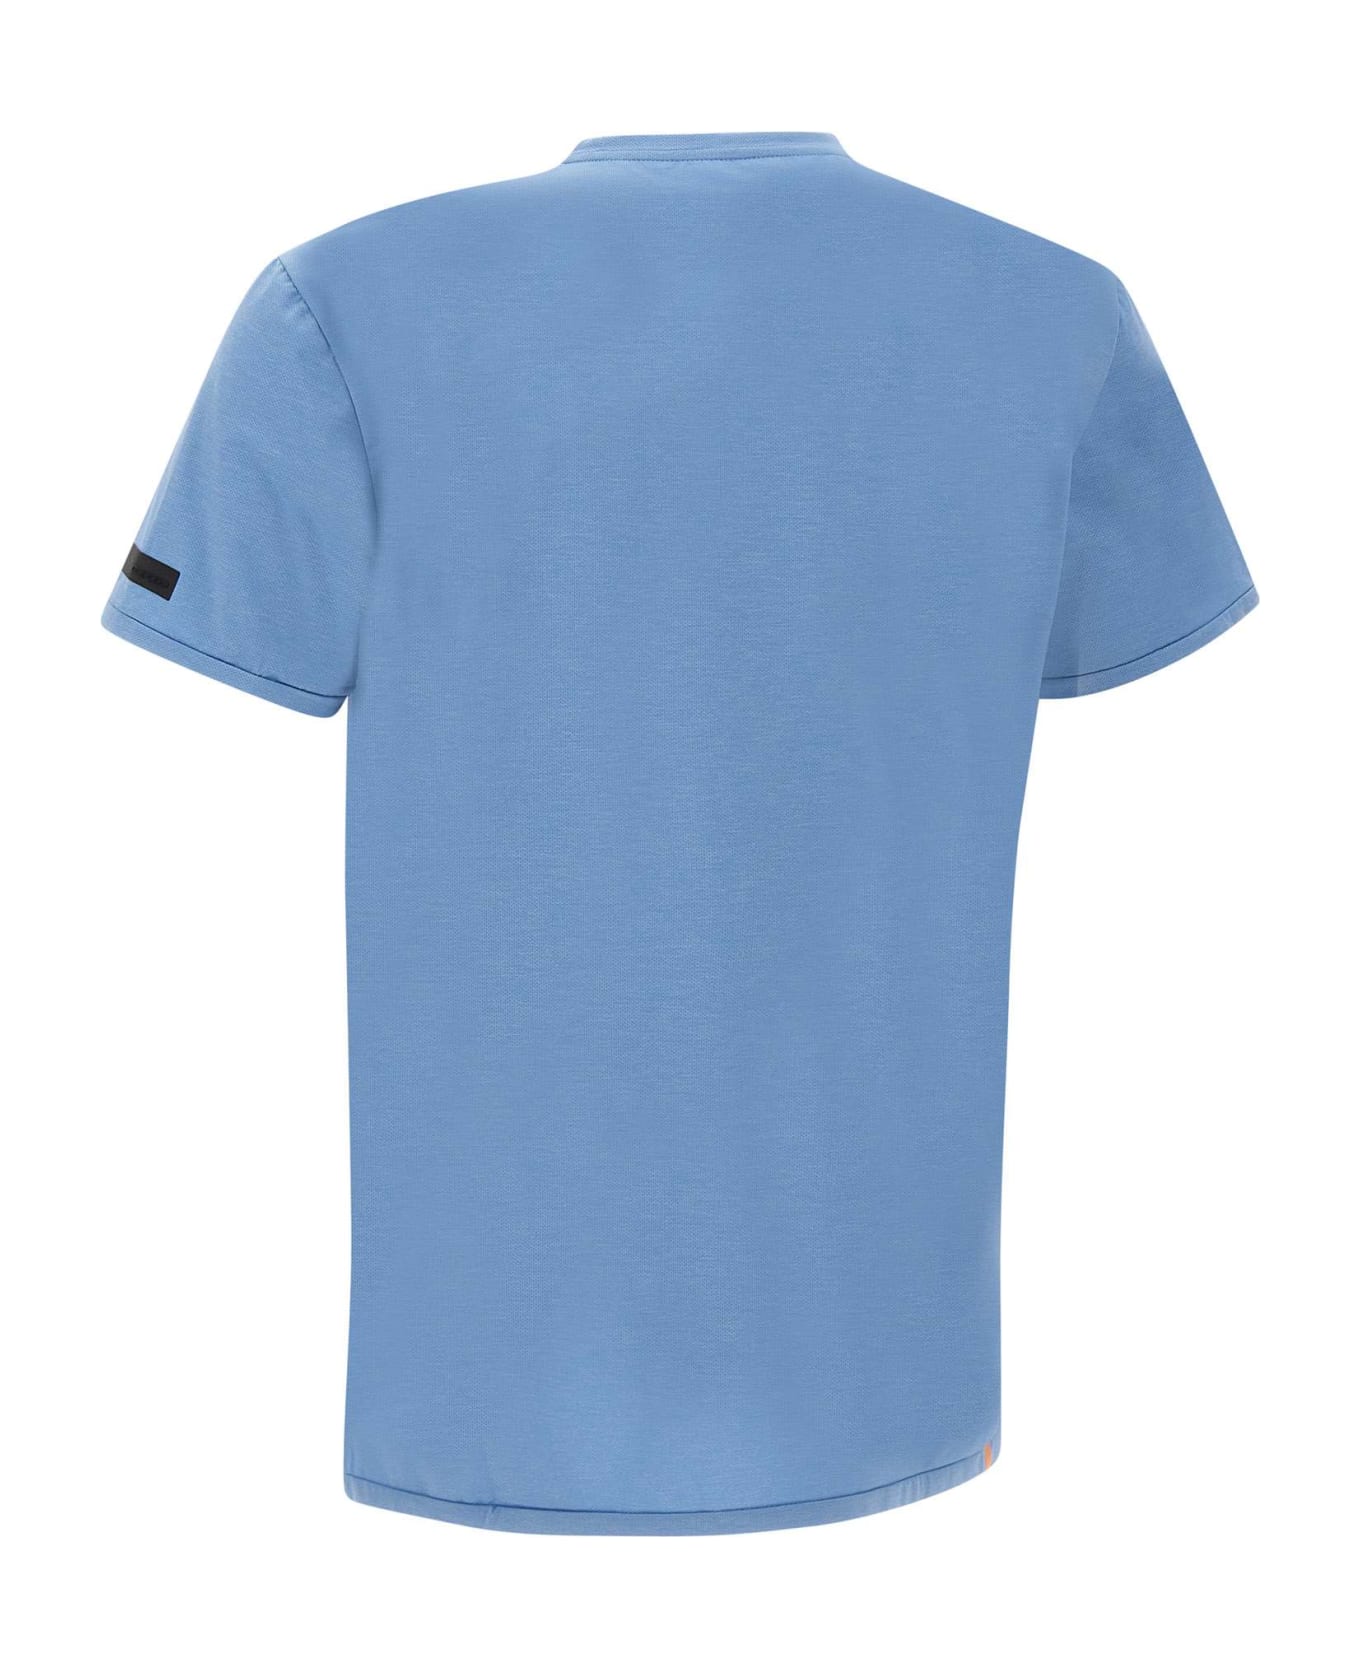 RRD - Roberto Ricci Design "summer Smart" T-shirt - LIGHT BLUE